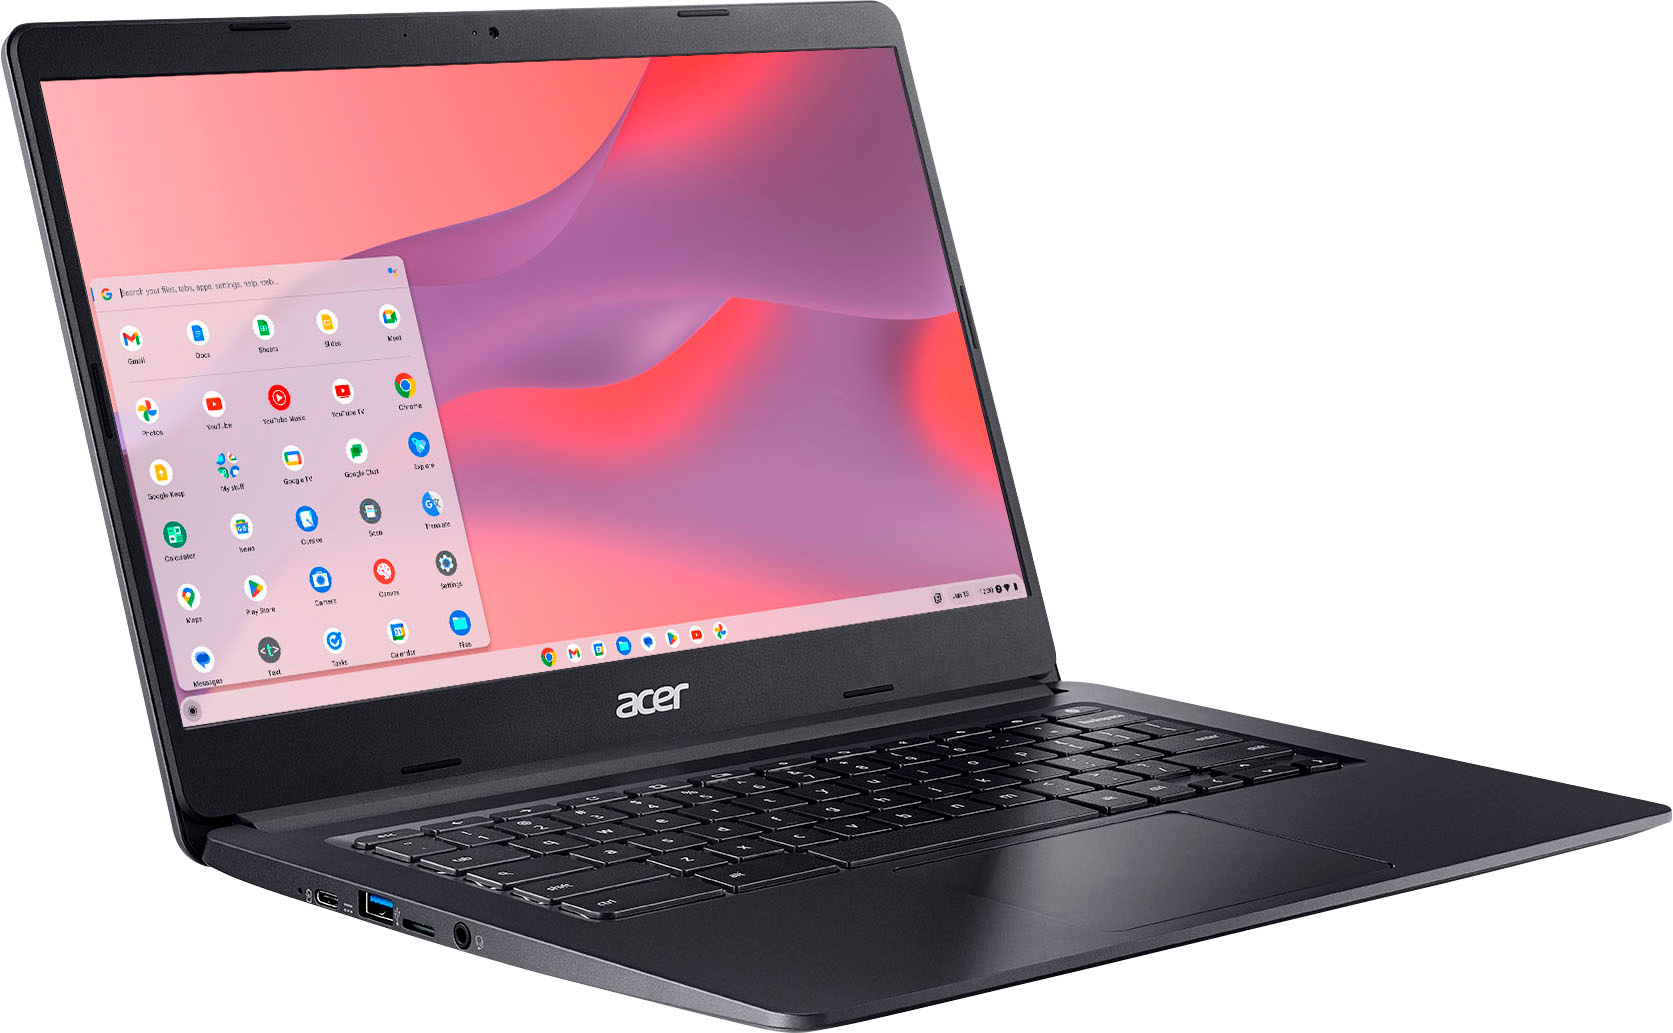 Tela e teclado Chromebook Acer na cor preta